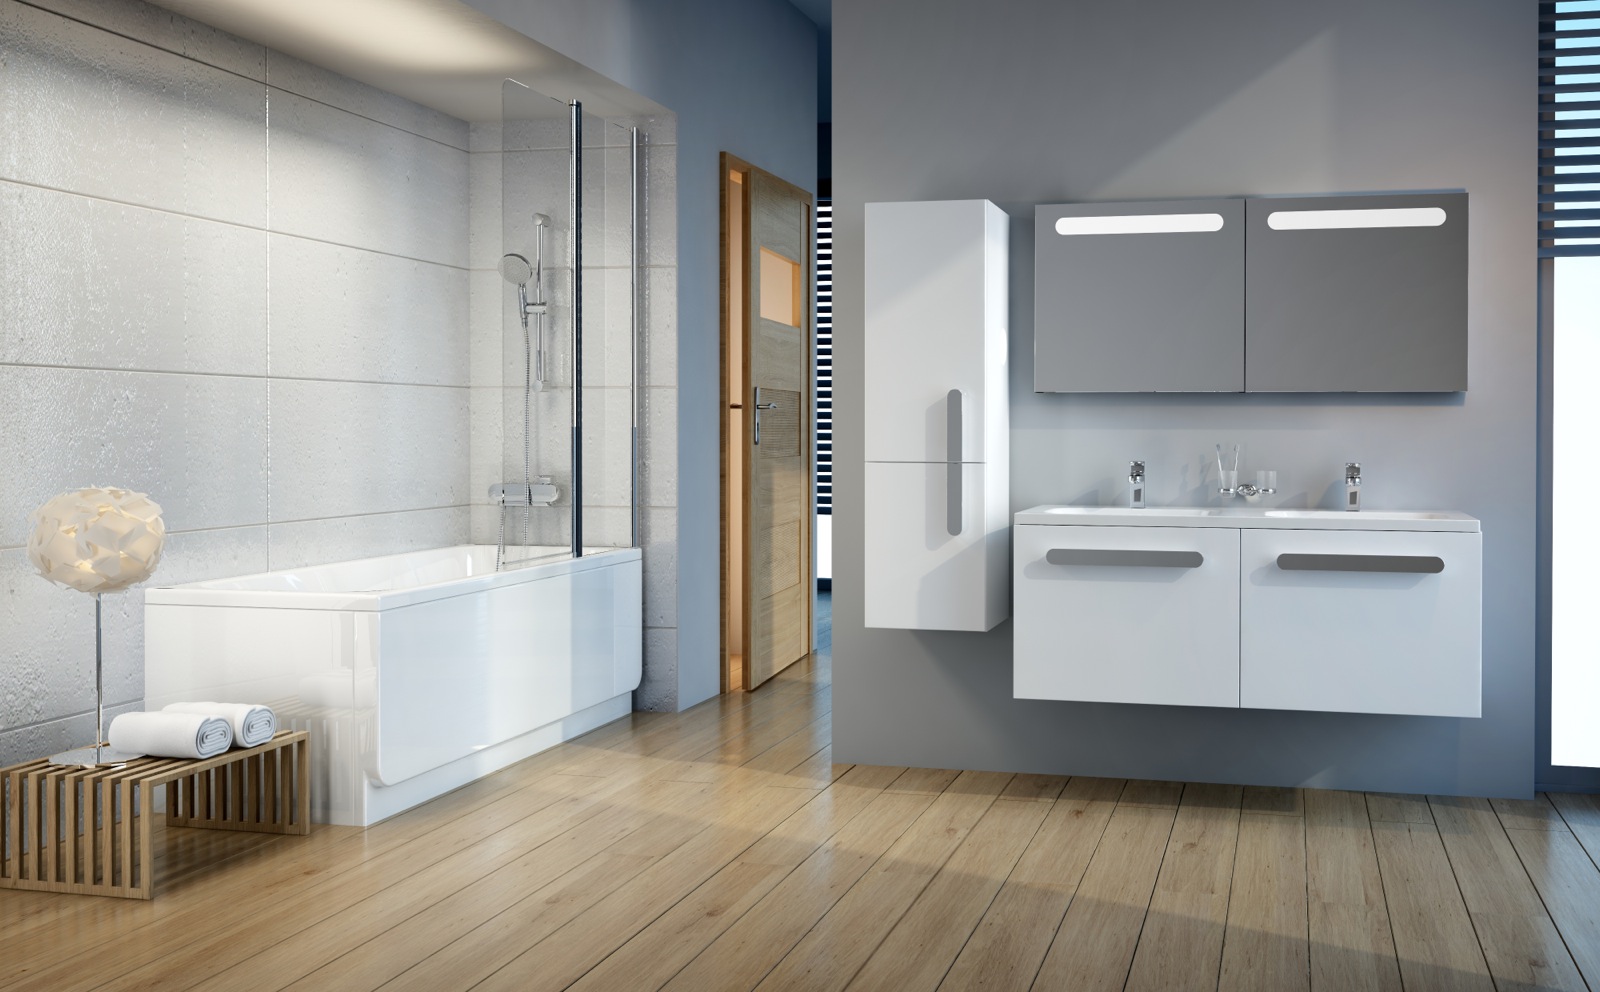 Az ideális fürdőszobában a kád, a kádparavánnal elkerített zuhanyzó, a fürdőszobabútorok színvilága illeszkedik a fürdőszoba falának burkolatához.